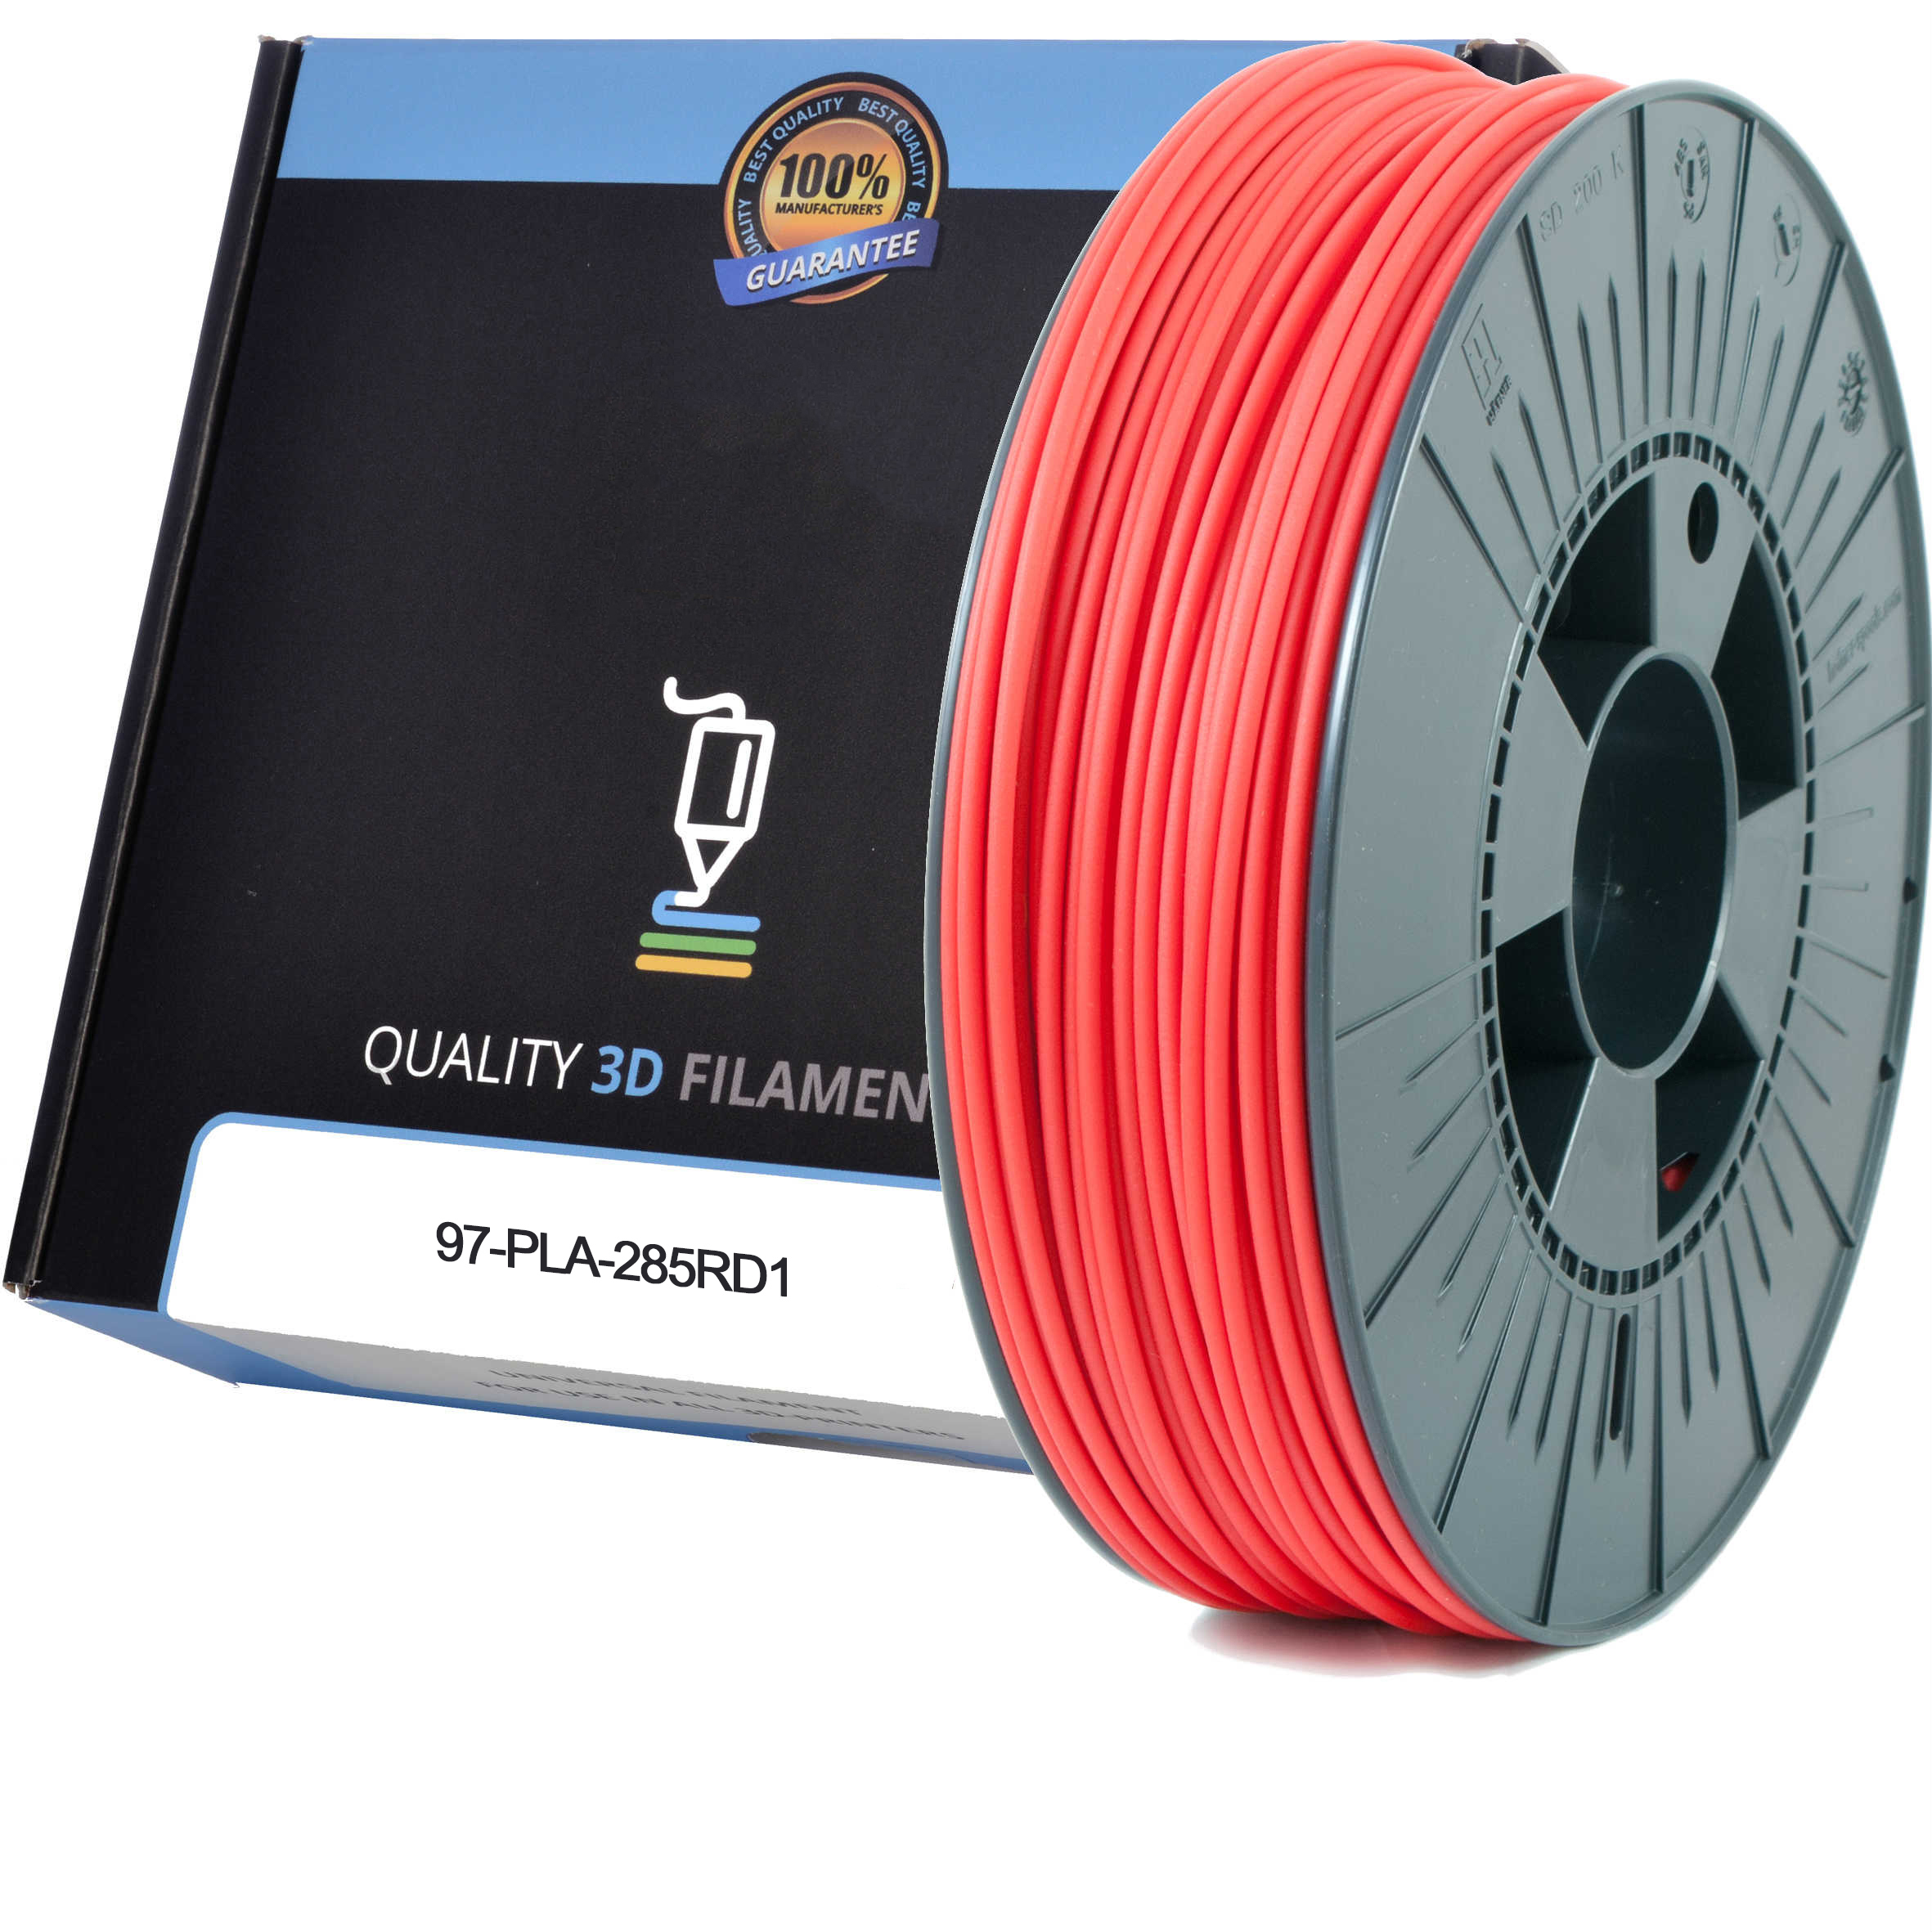 Premium Compatible PLA 2.85mm Red 1kg 3D Filament (97-PLA-285RD1)